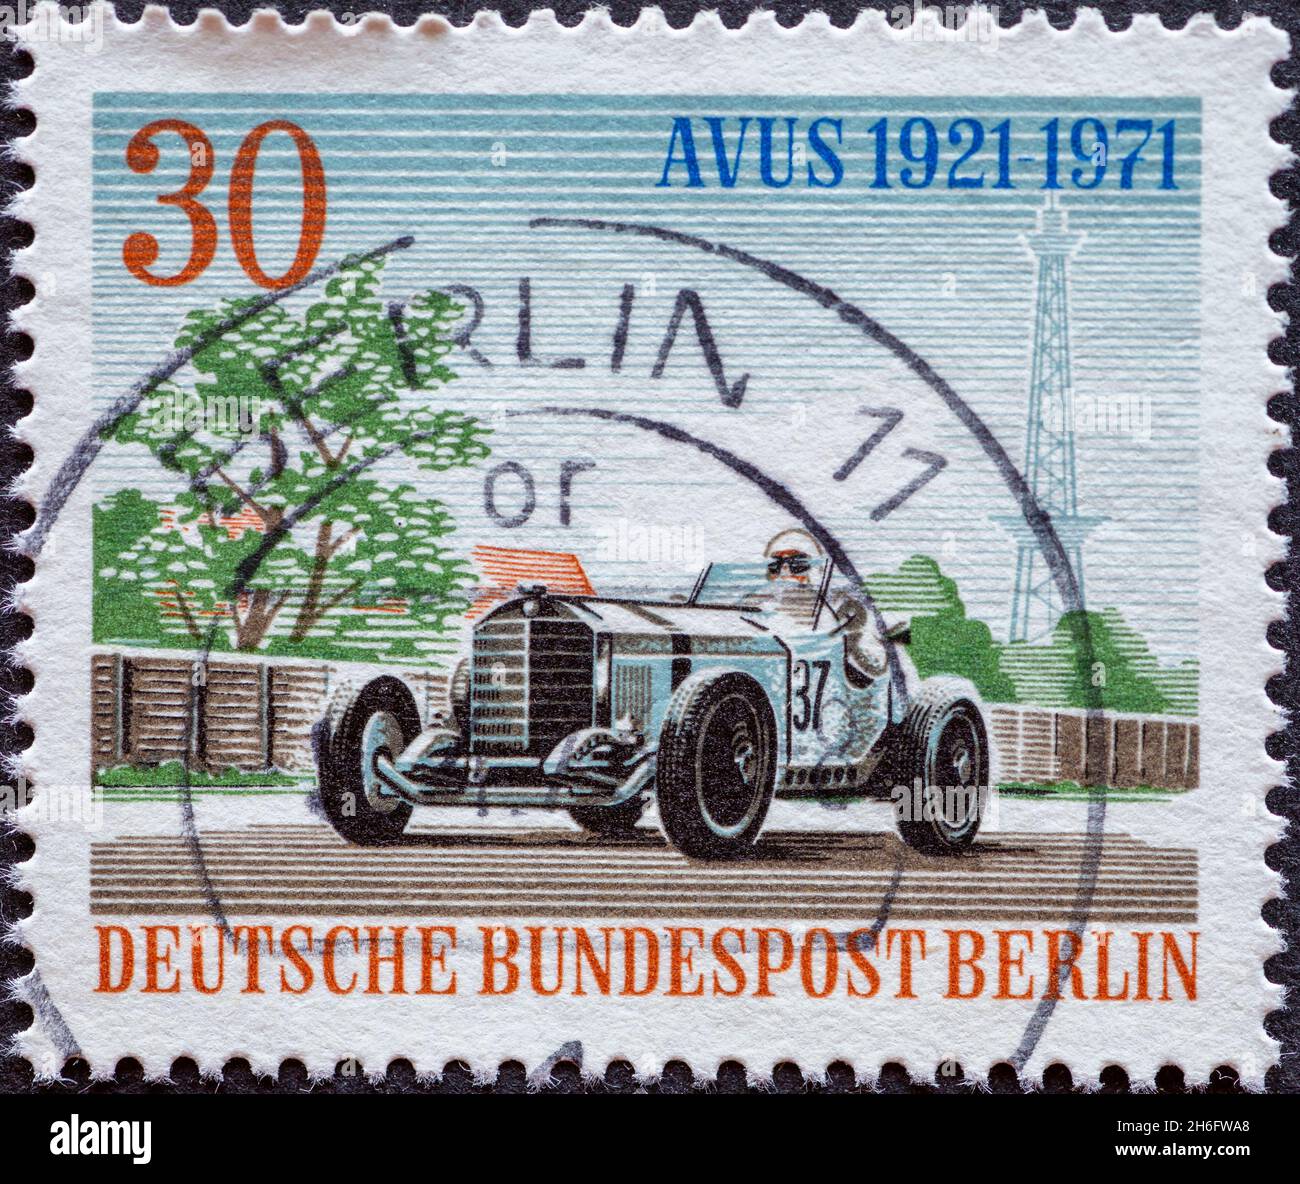 ALLEMAGNE, Berlin - VERS 1971 un timbre-poste de l'Allemagne, Berlin montrant la voiture de course pour le 50ème anniversaire de la course d'Avus: Mercedes Benz Silberpf Banque D'Images